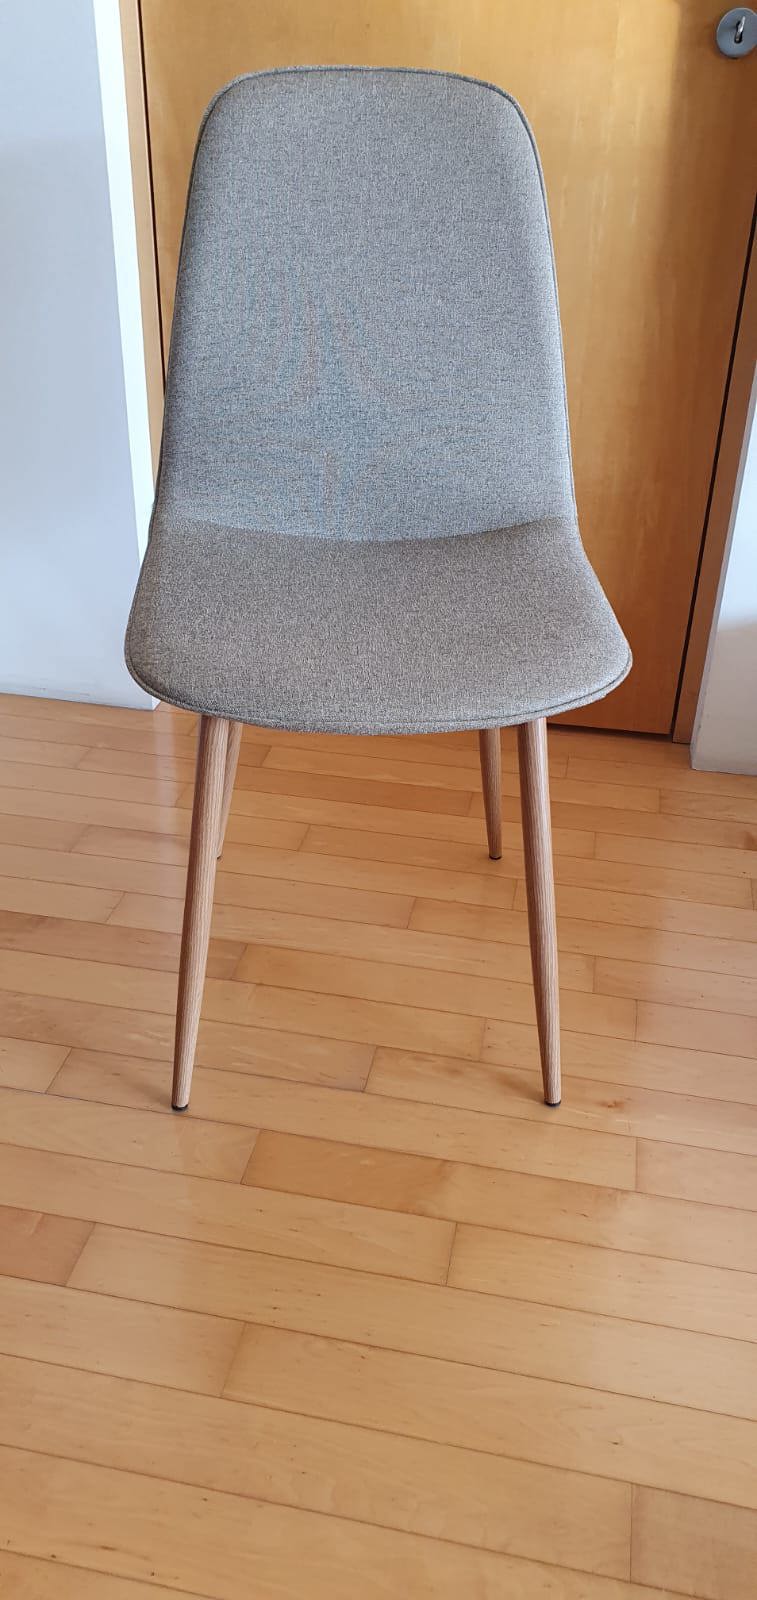 3x Stuhl beige mit Beinen in Holzoptik - 2 neu, 1 neuwertig 